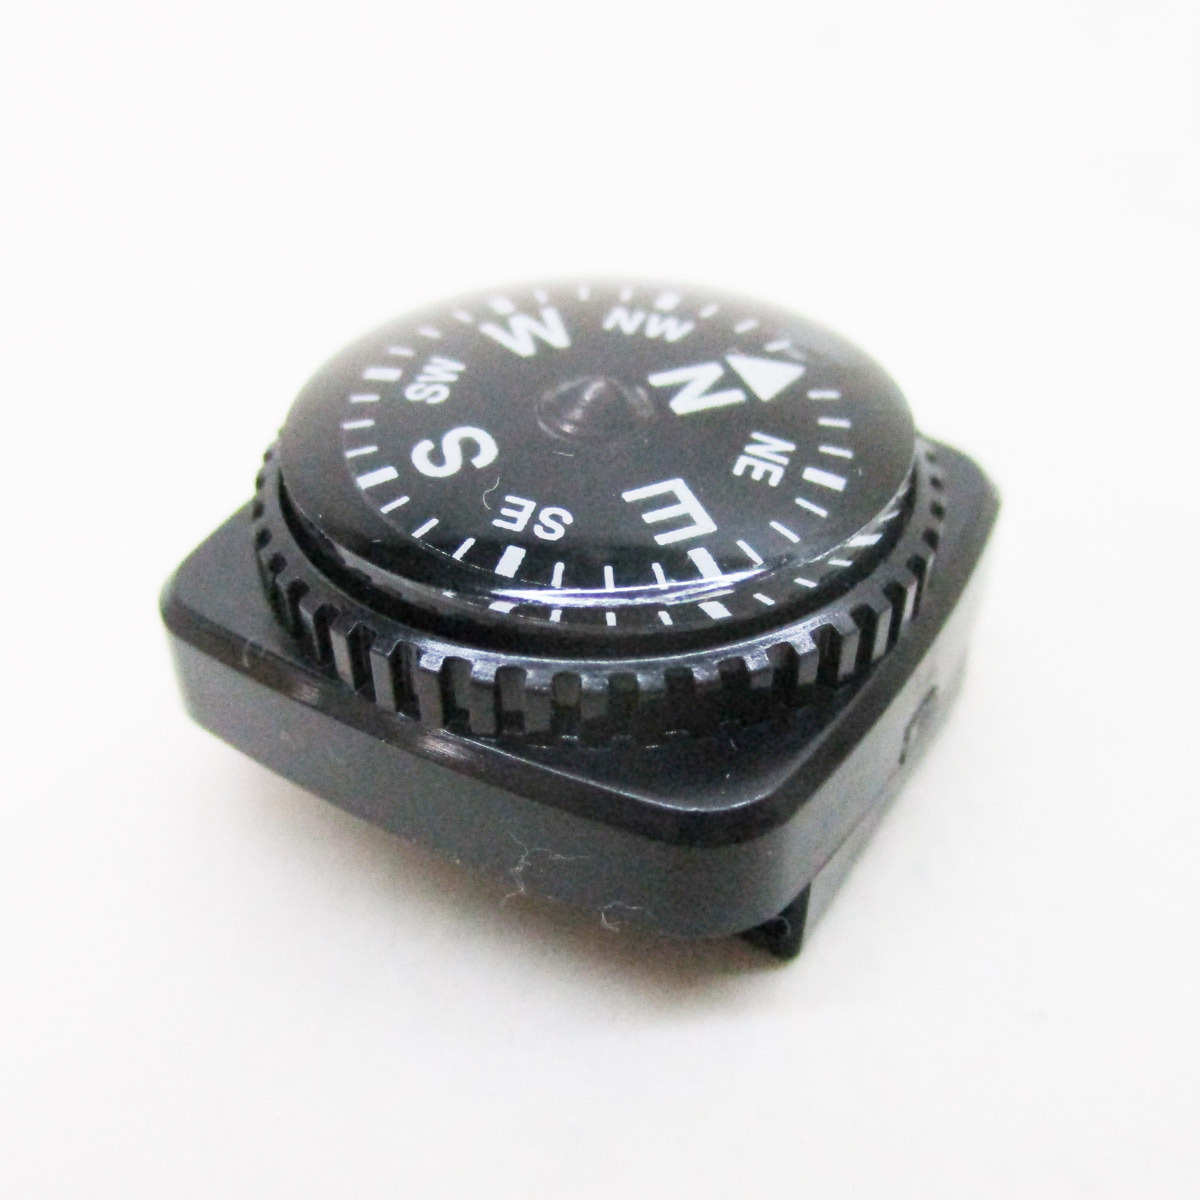  включение в покупку возможность компас список compass дайвер список compass 100m водонепроницаемый ремень через . модель сделано в Японии цвет черный 